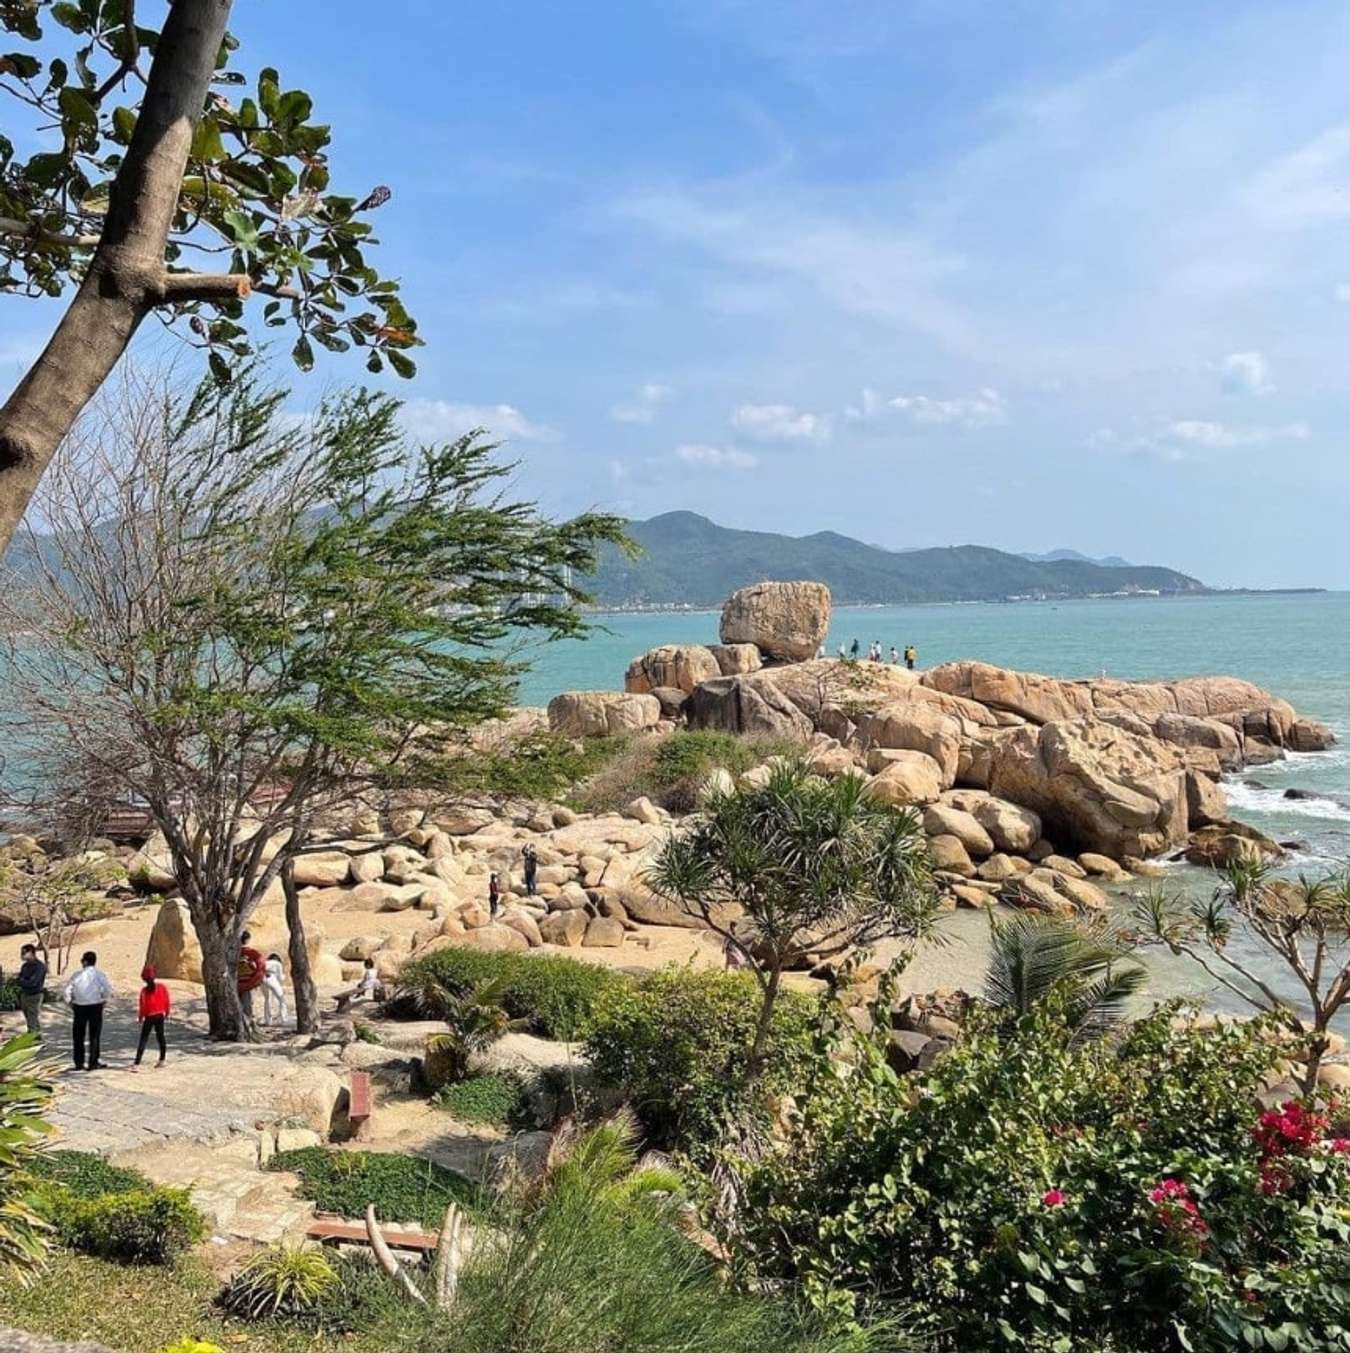 Phát hiện 2 bãi đá có tên gọi "theo cặp" ở Nha Trang, cách trung tâm chỉ 3km: Nhiều chuyện ly kỳ đằng sau- Ảnh 6.